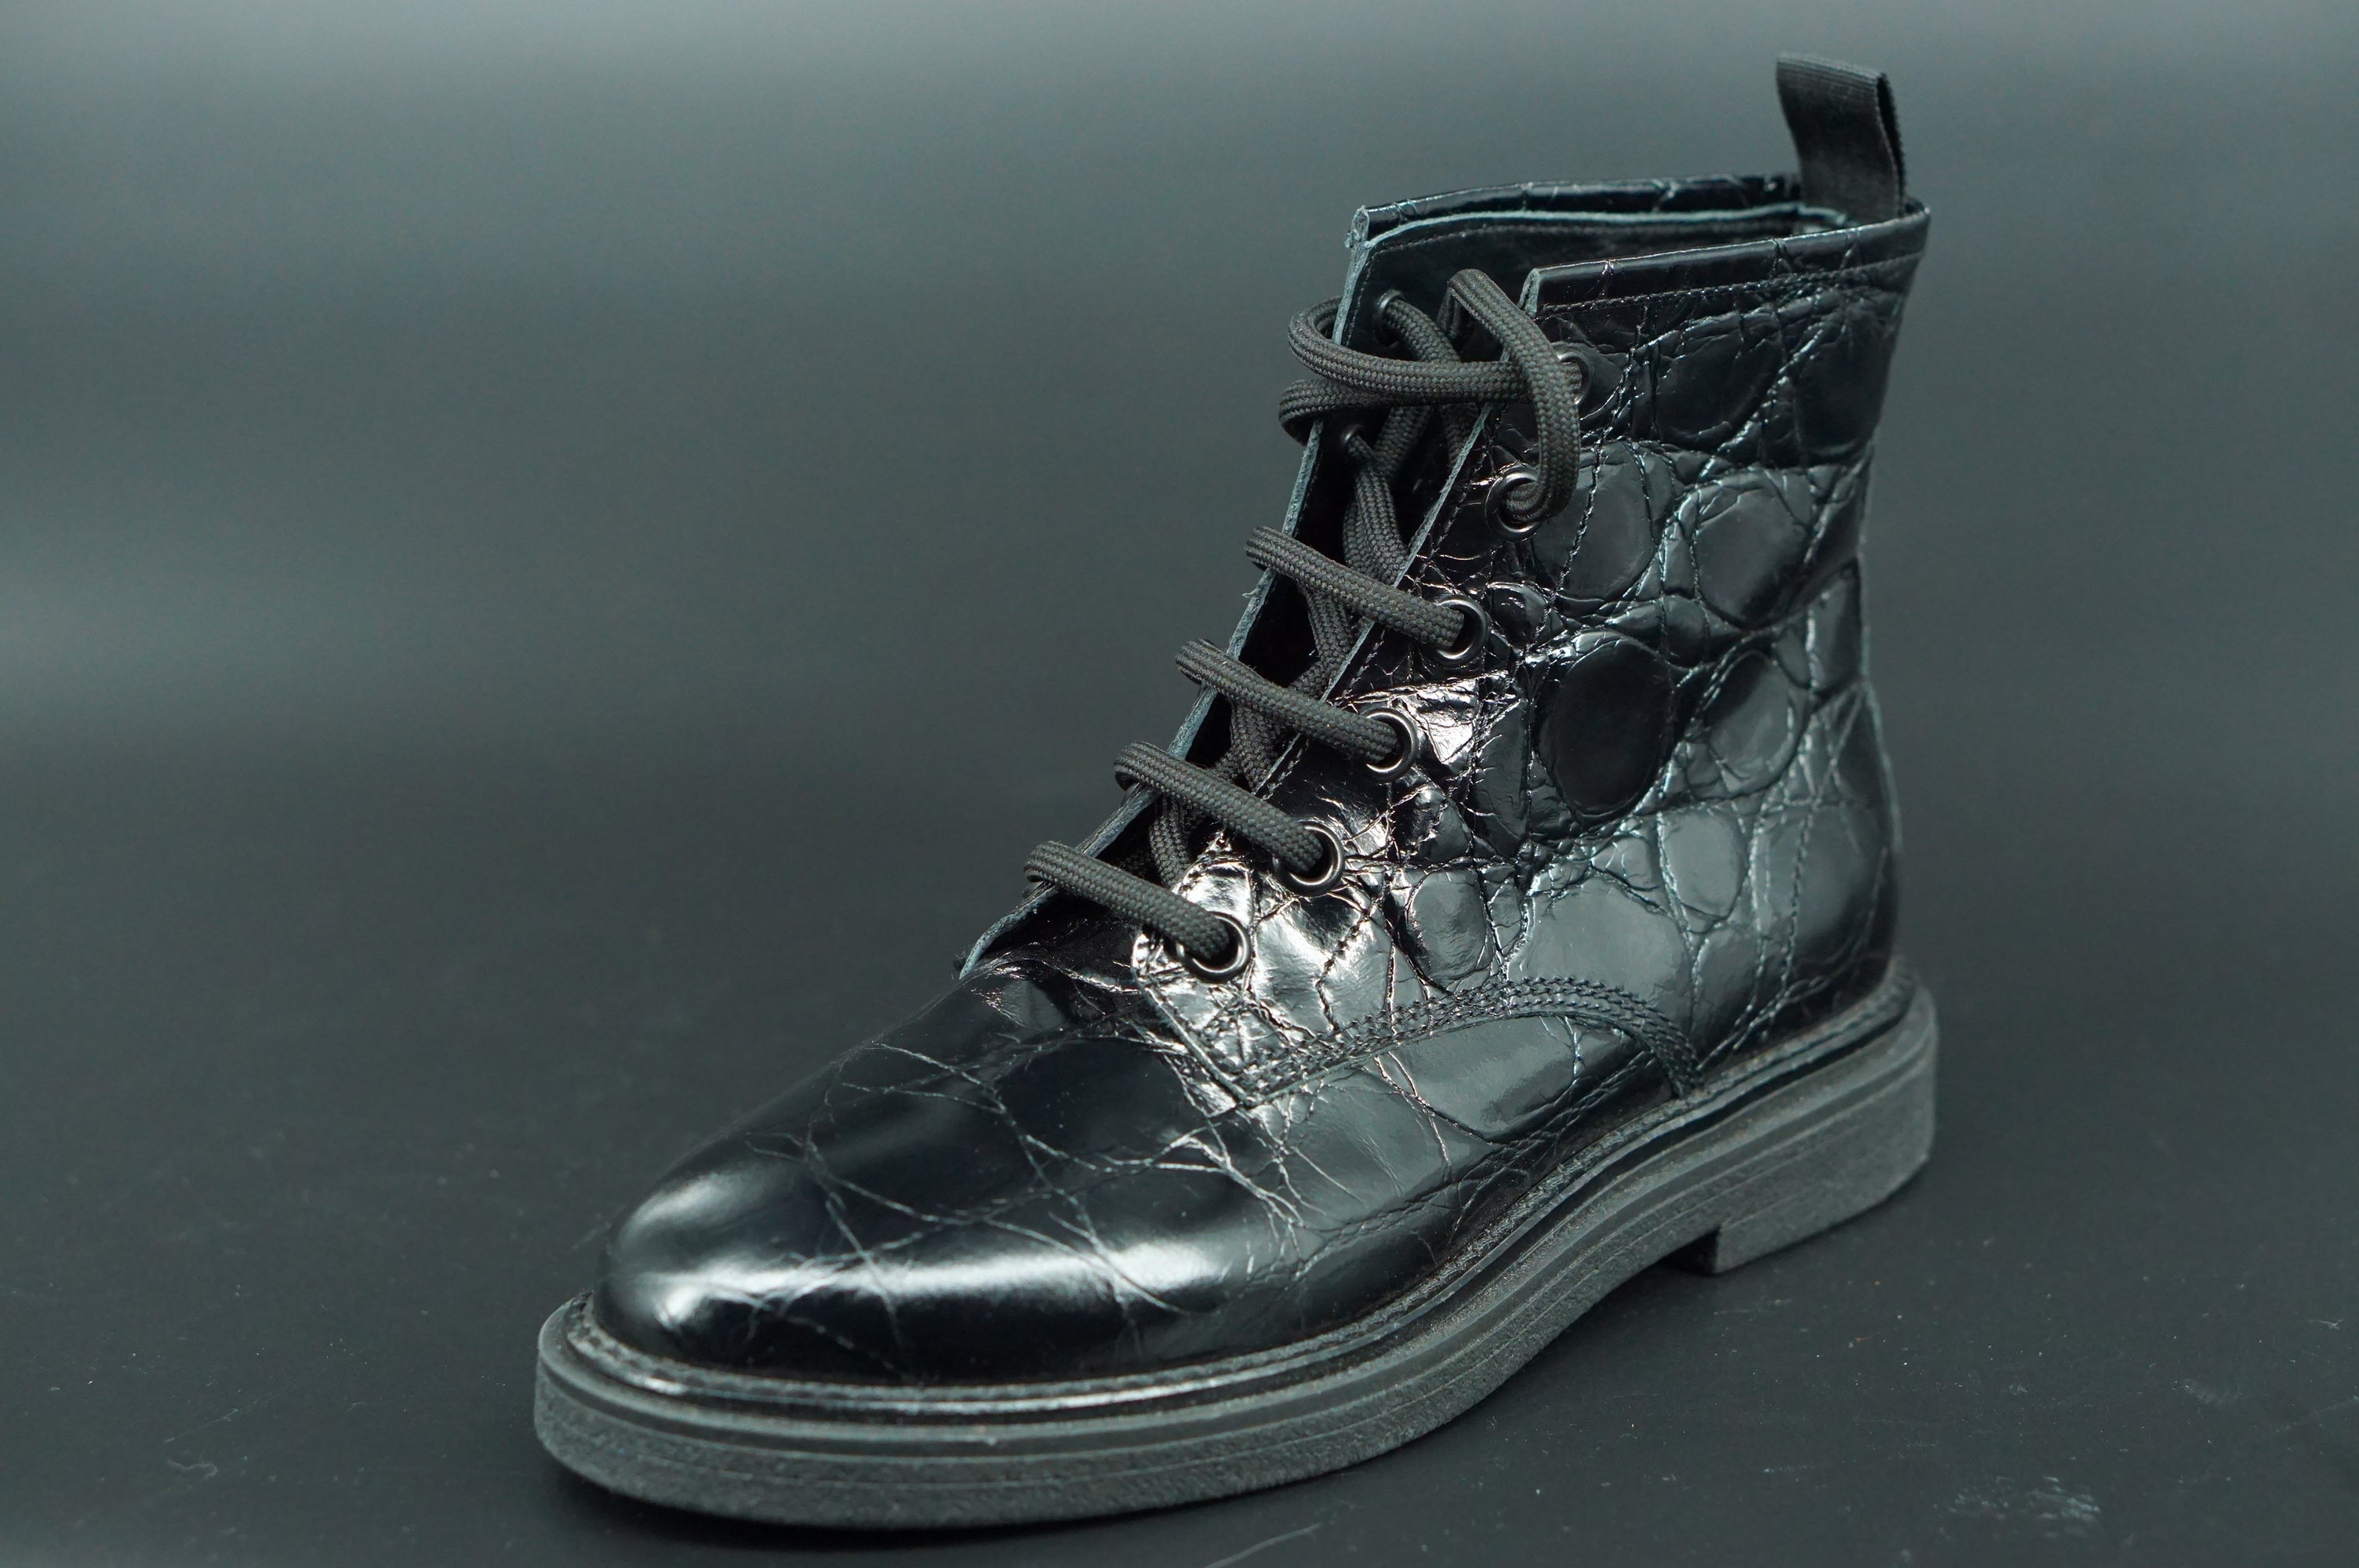 Attilio Giusti Leombruni AGL Combat Boot Ankle Boots Size 37.5 Croc Black $495